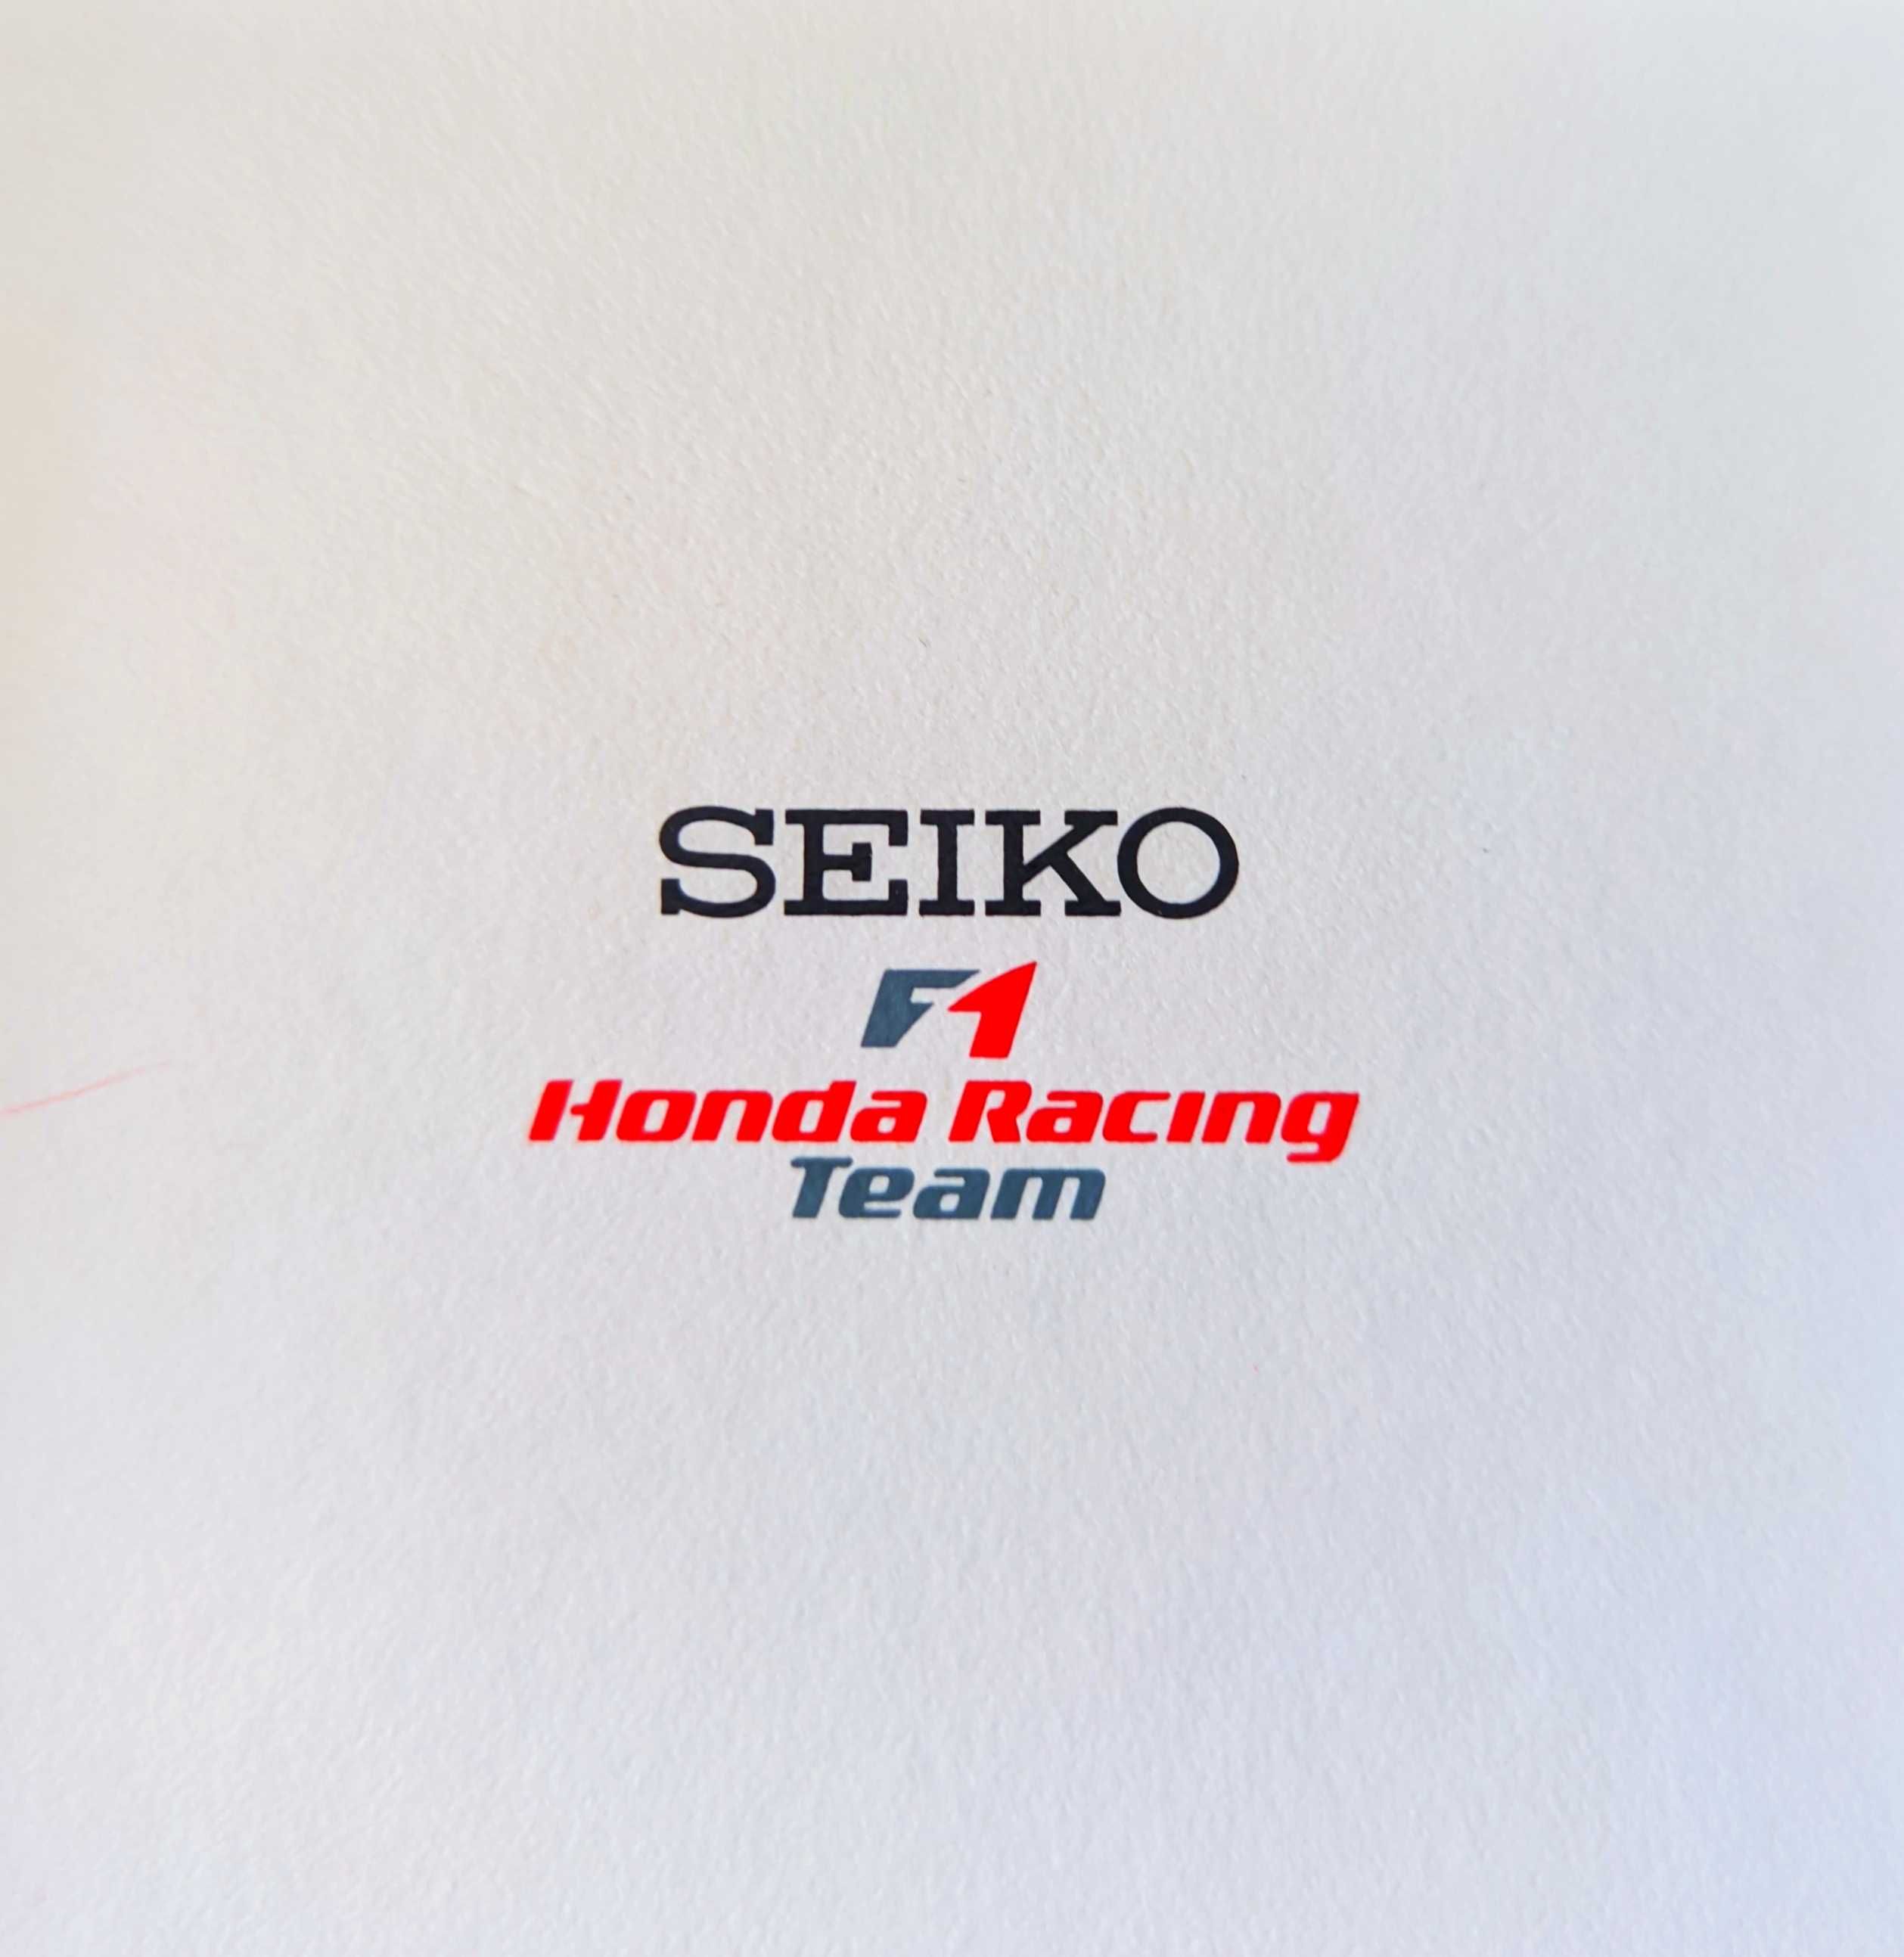 Seiko F1 Honda racing special edition